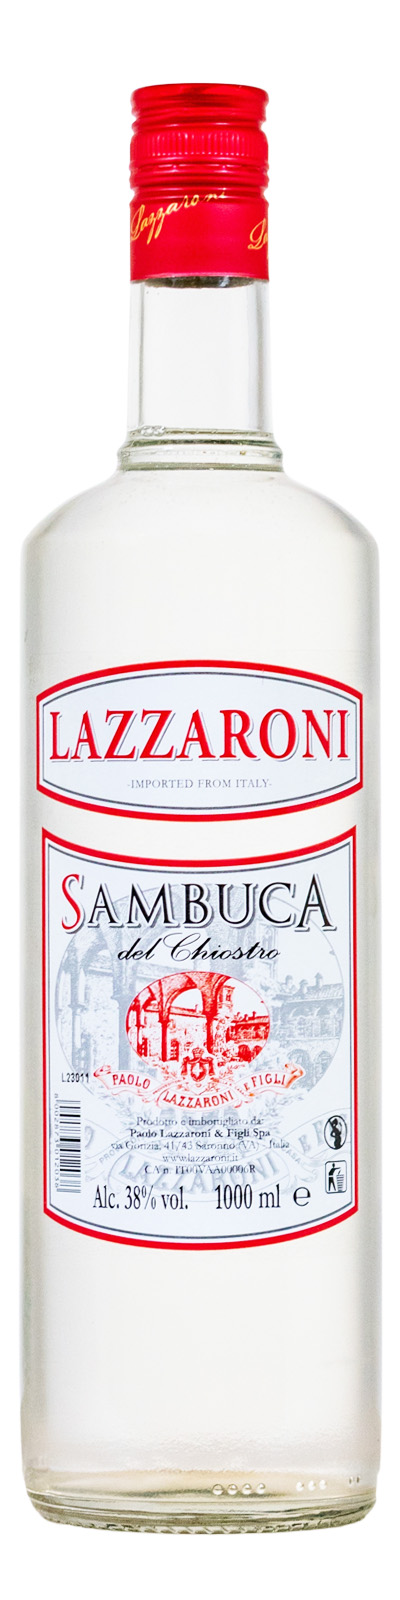 Lazzaroni Sambuca del Chiostro - 1 Liter 38% vol